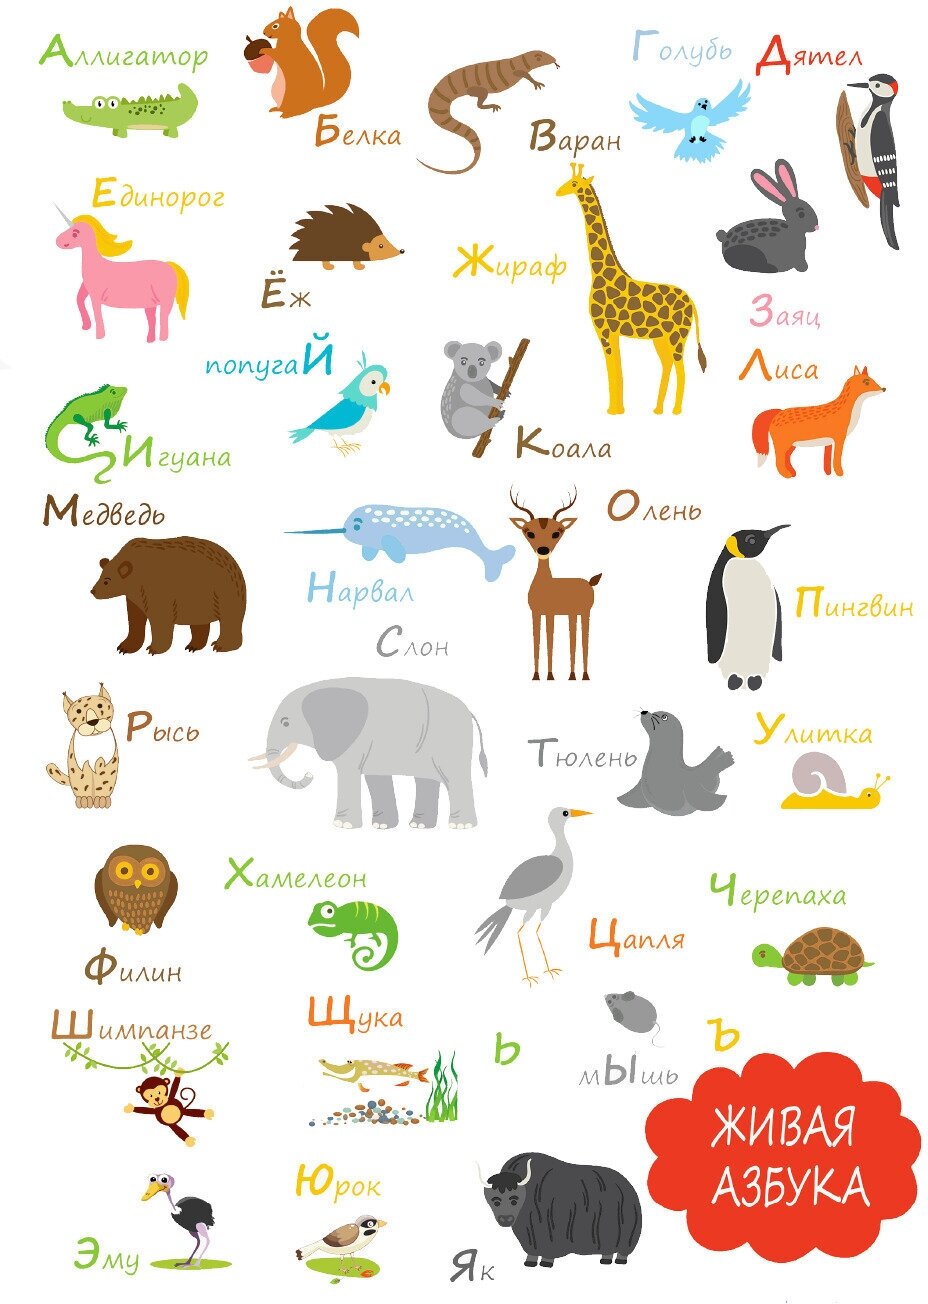 Плакат "Русский алфавит для детей. Тематика: Животные" / Формат А4 (21х30 см) / Постер для интерьера